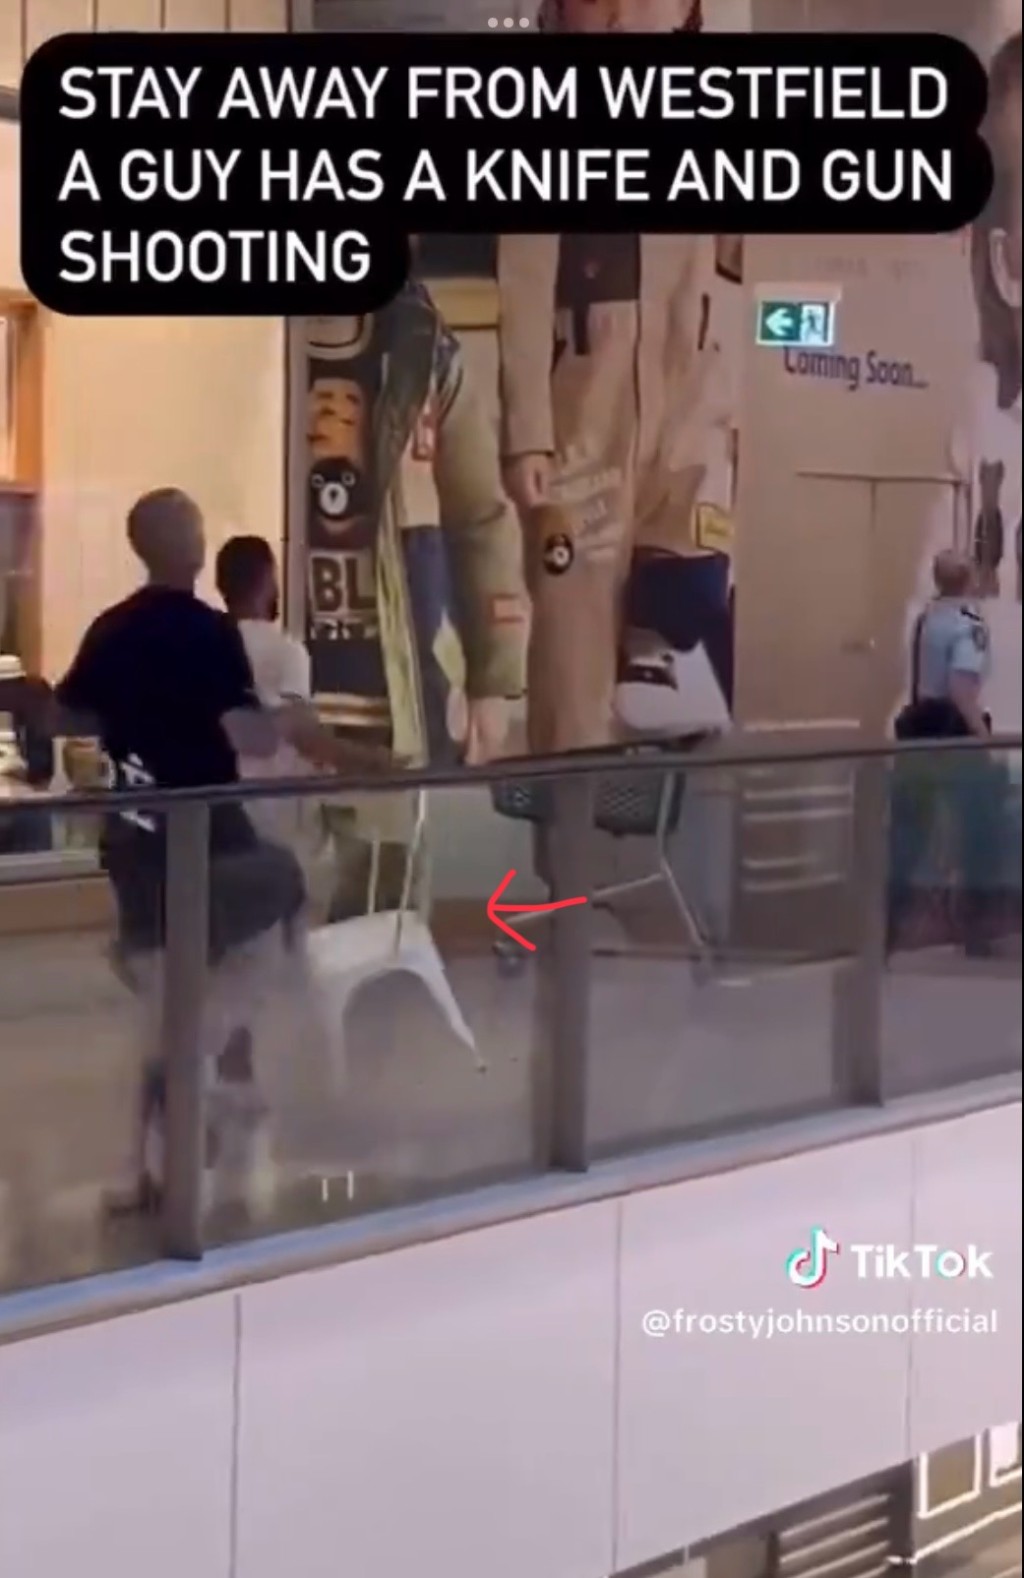 另一影片显示有人拿着椅子奔向出事位置，未知是否准备用来对付凶徒。